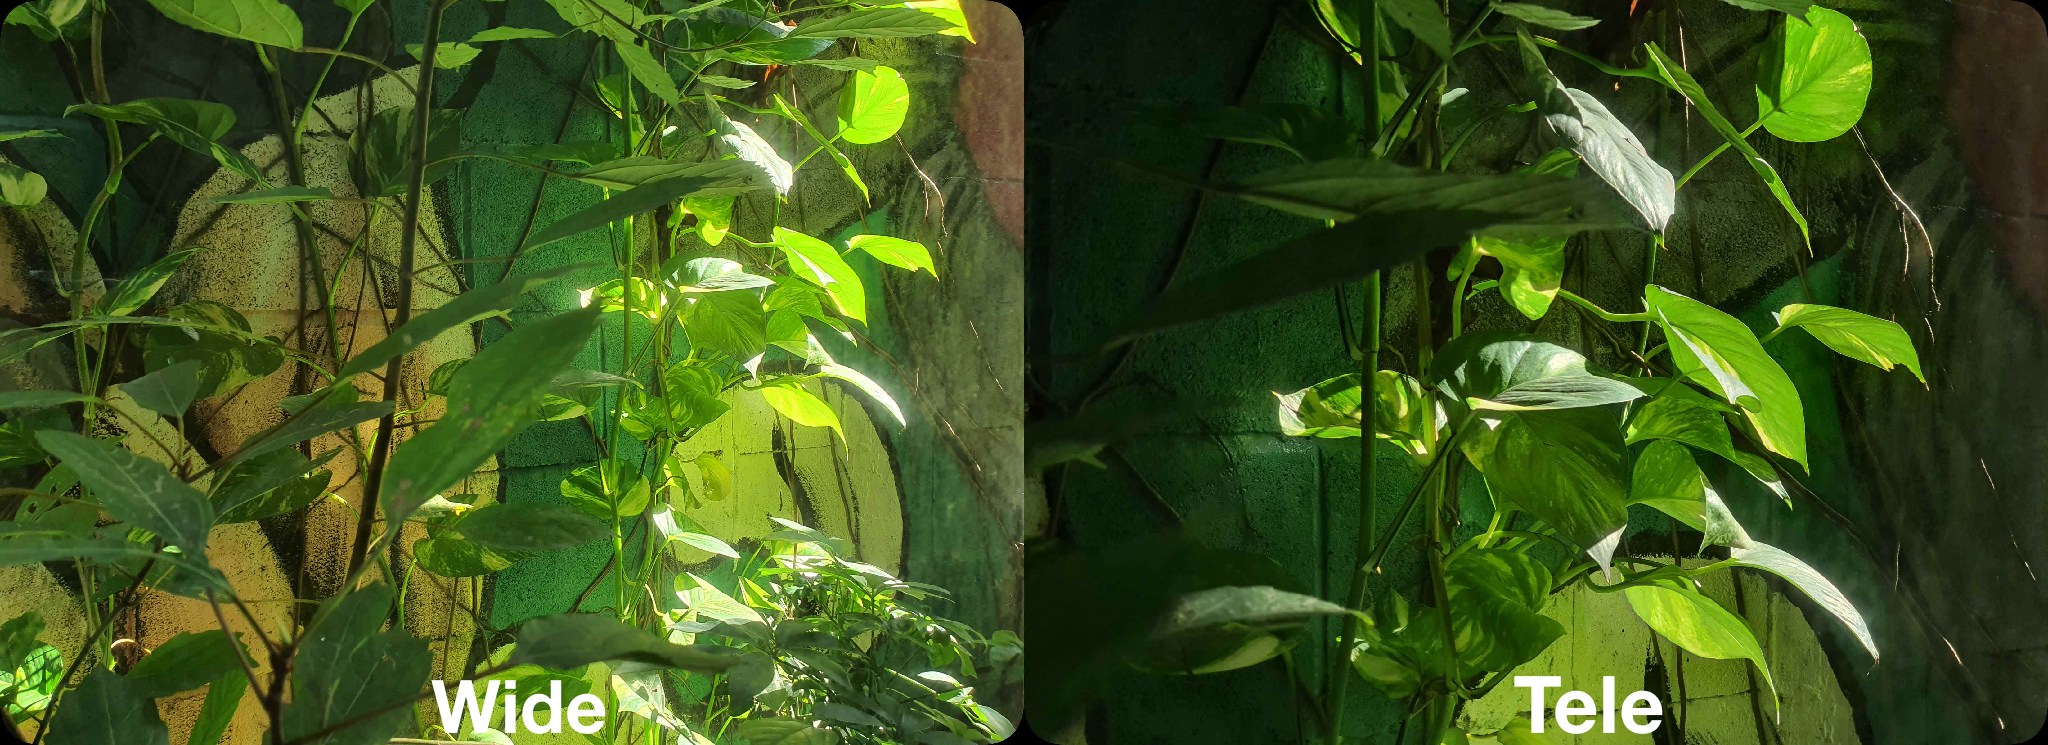 5 So sánh ảnh tele và crop góc rộng-Camera.tinhte.vn.jpg